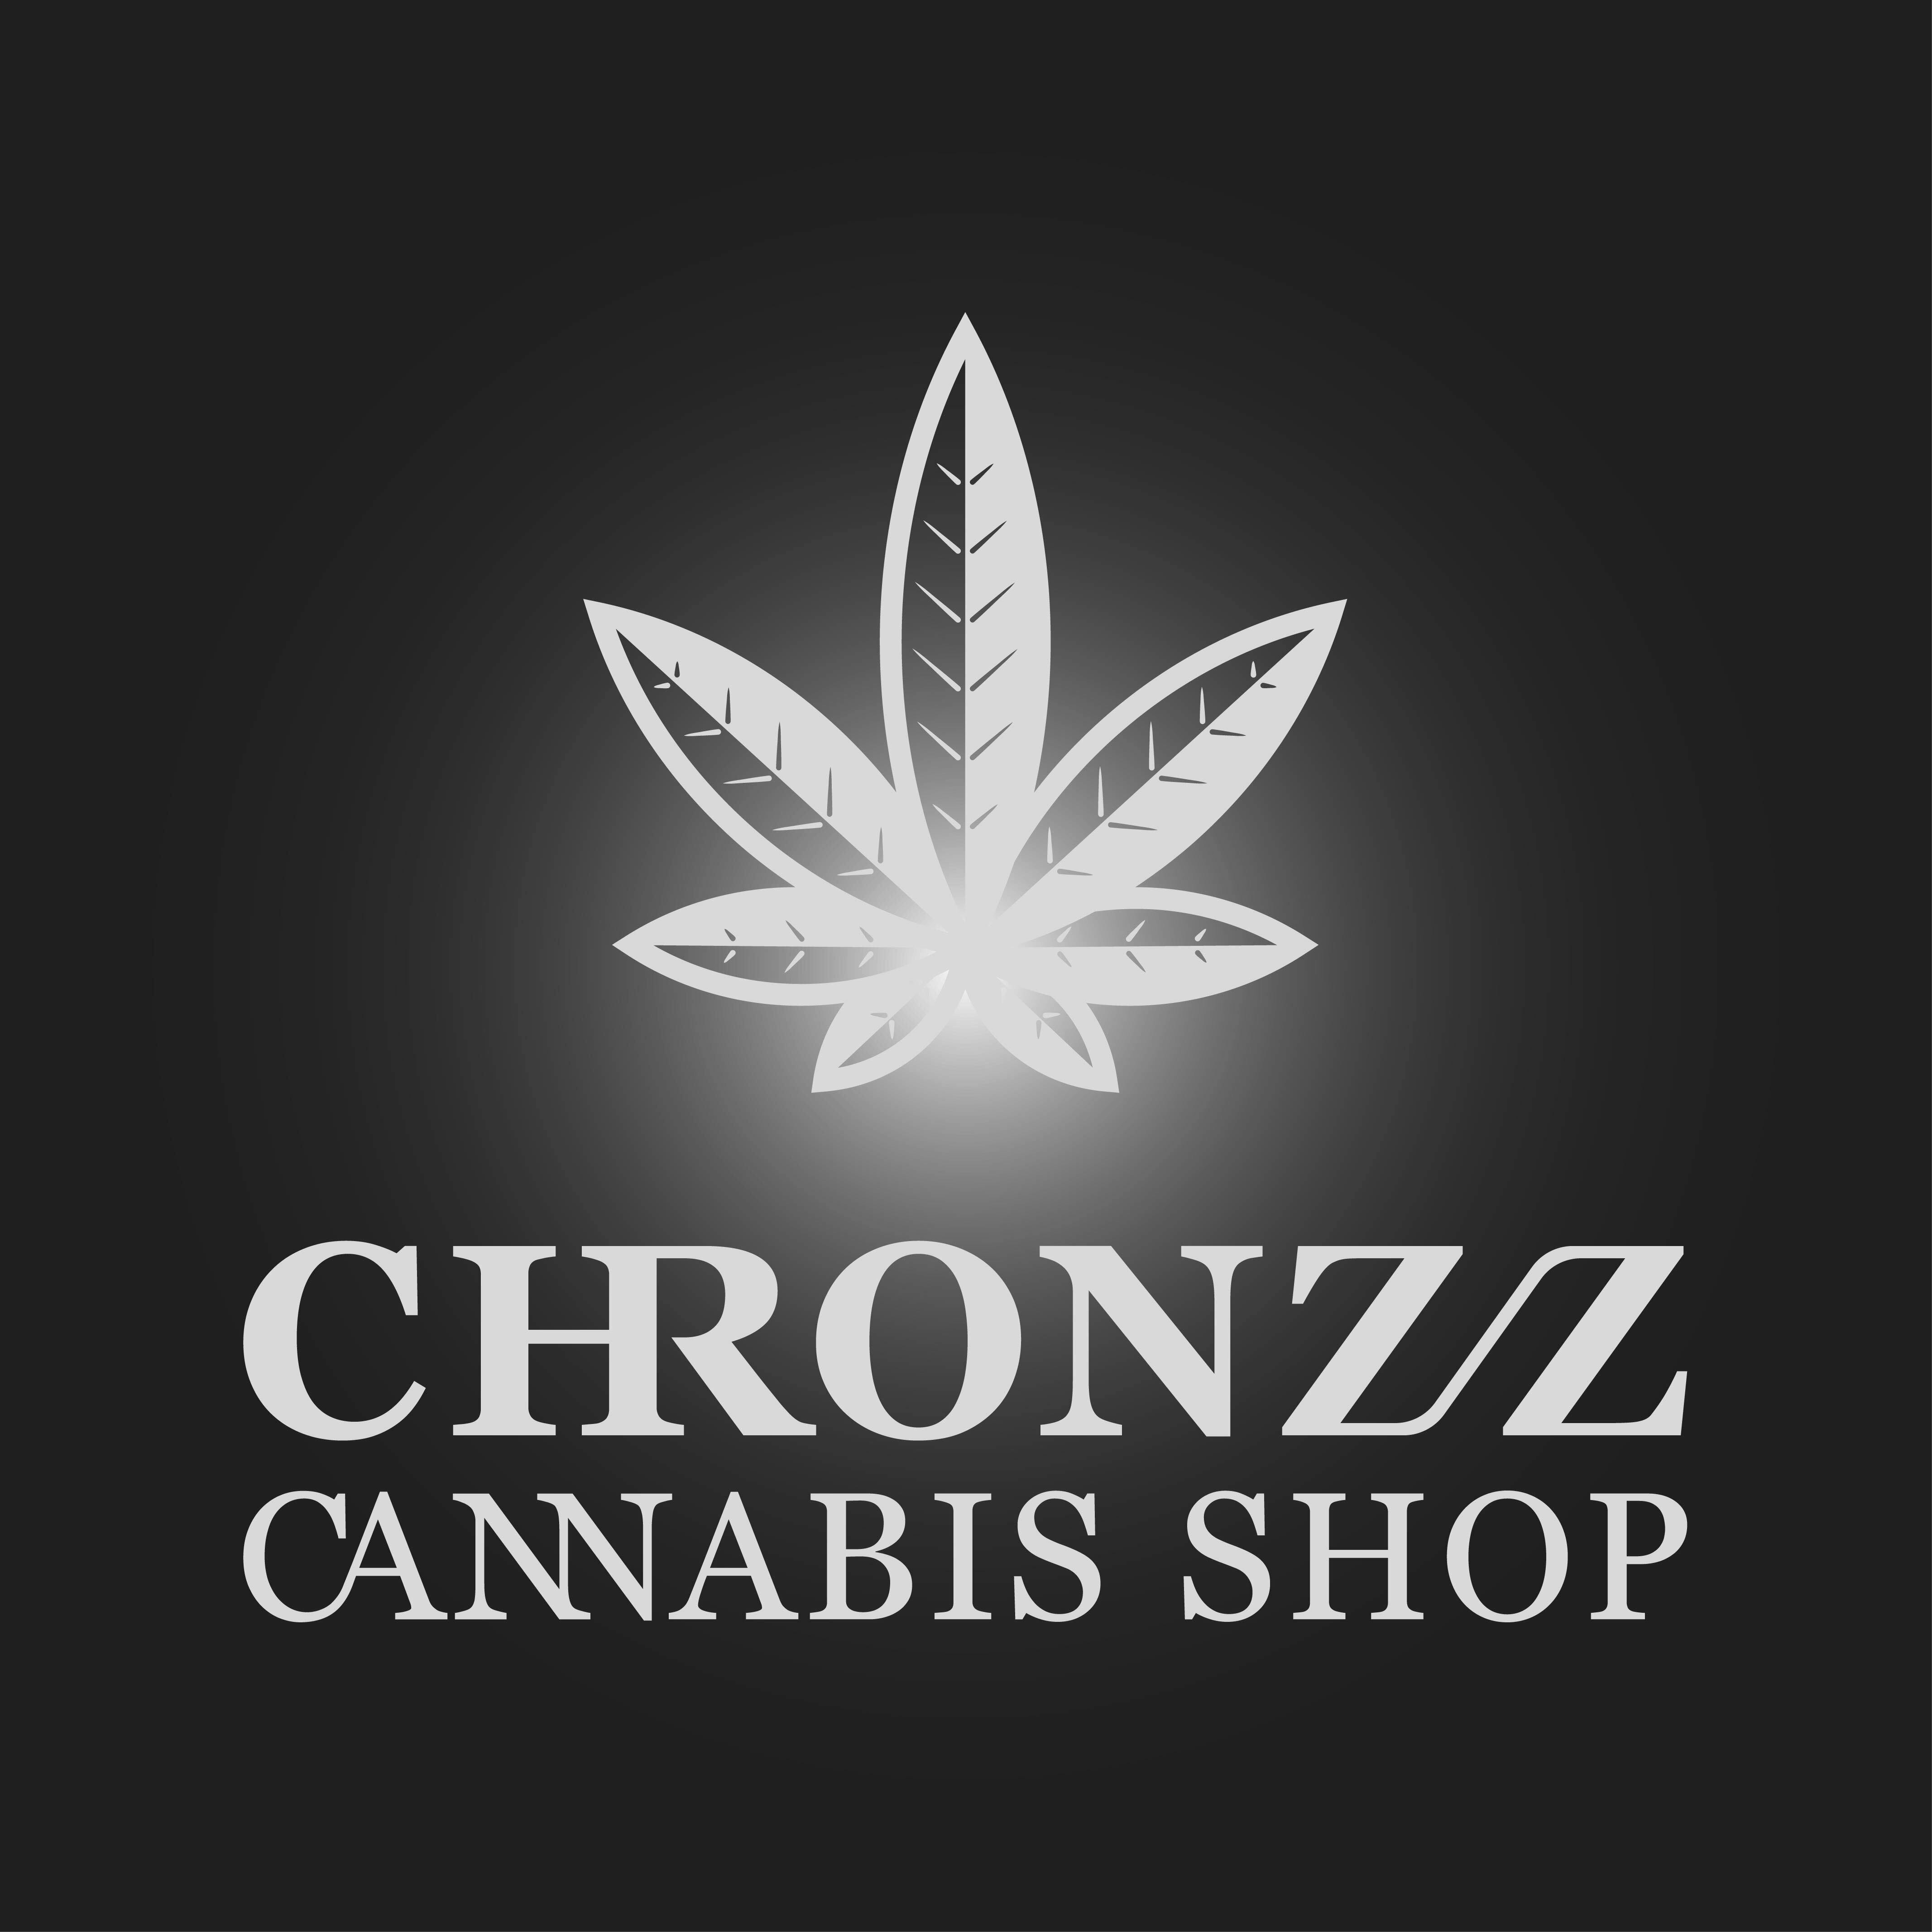 Chronzz Cannabis Shop logo